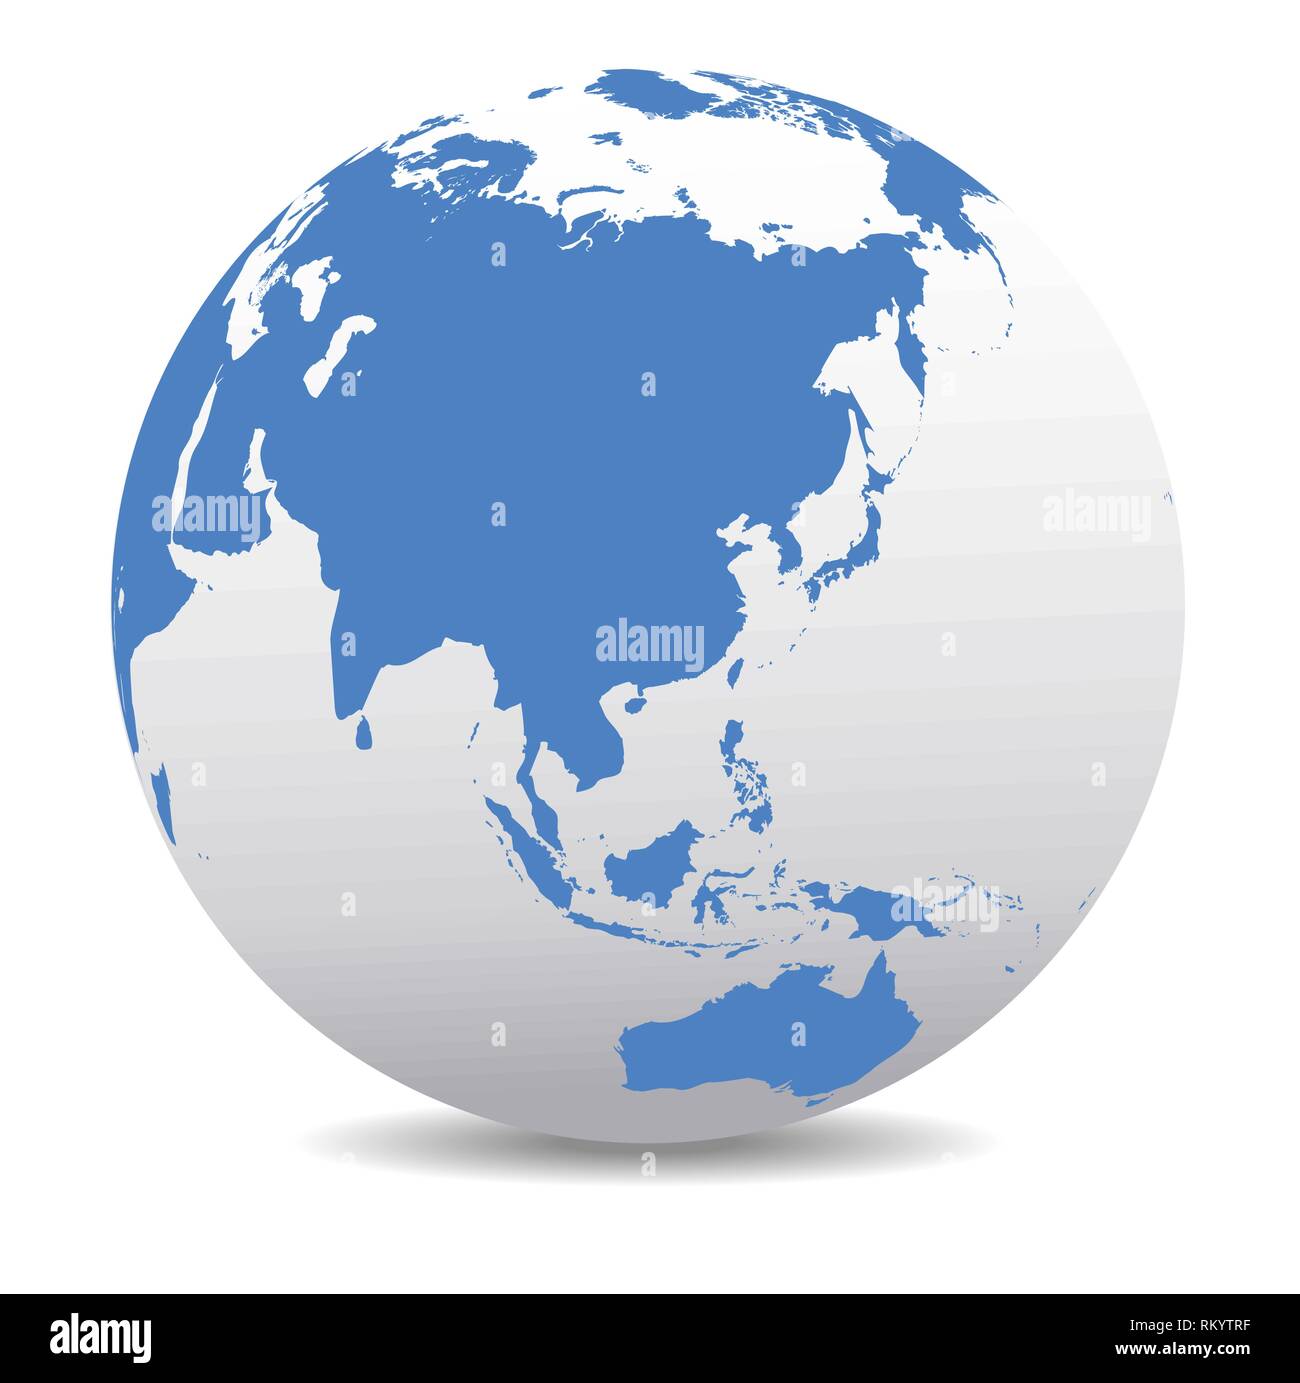 Cina, Giappone, Malaysia, Thailandia, Indonesia, Mondo Globale Illustrazione Vettoriale